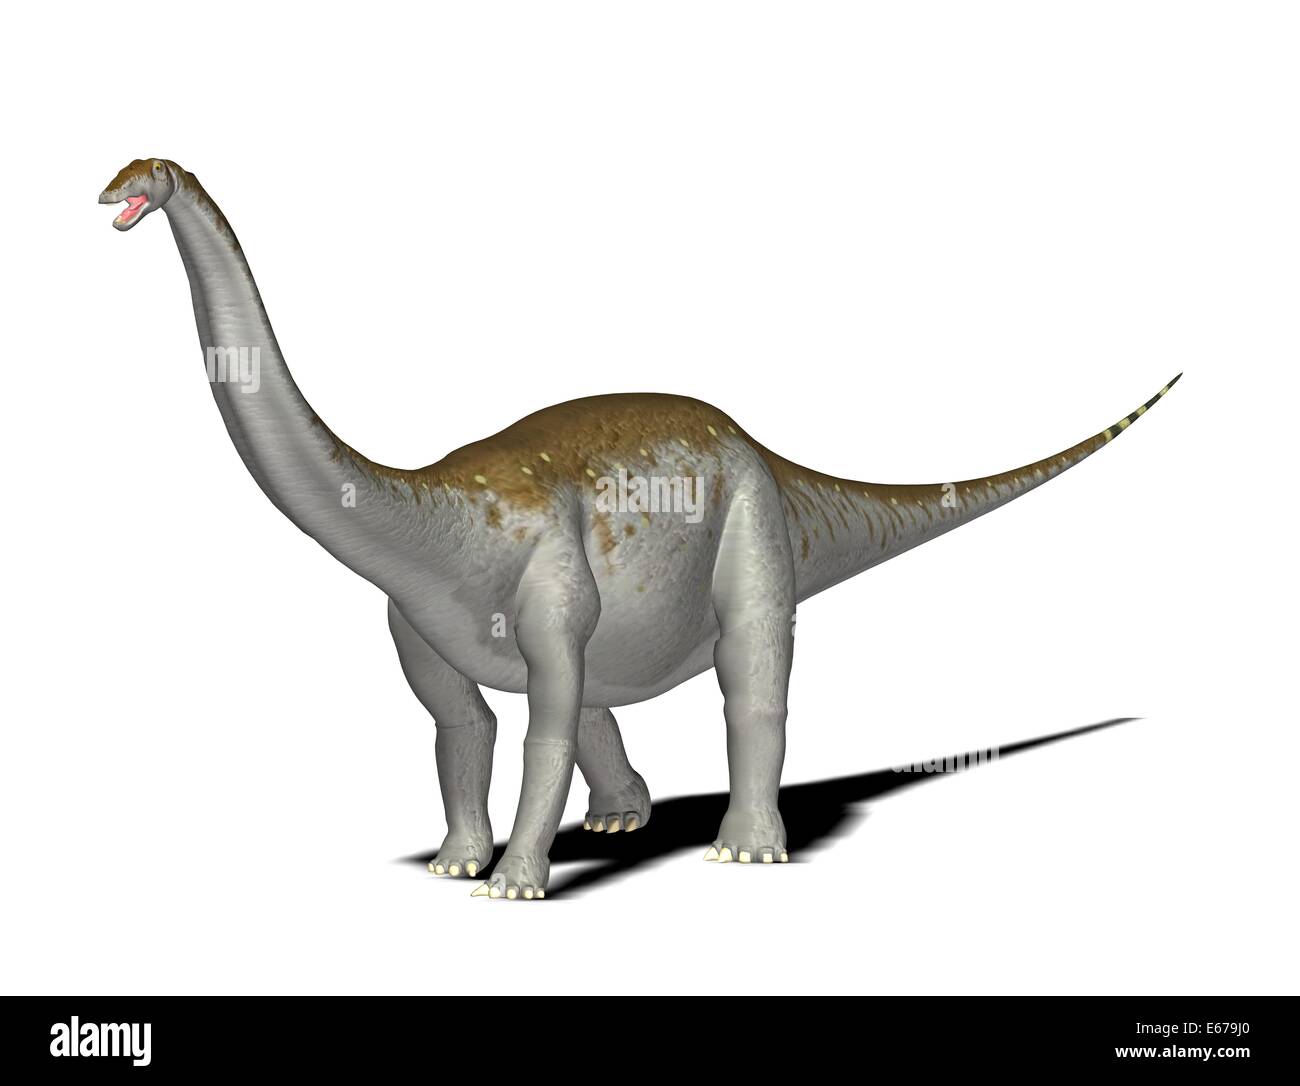 Dinosaurier Apatosaurus / dinosaur Apatosaurus Stock Photo